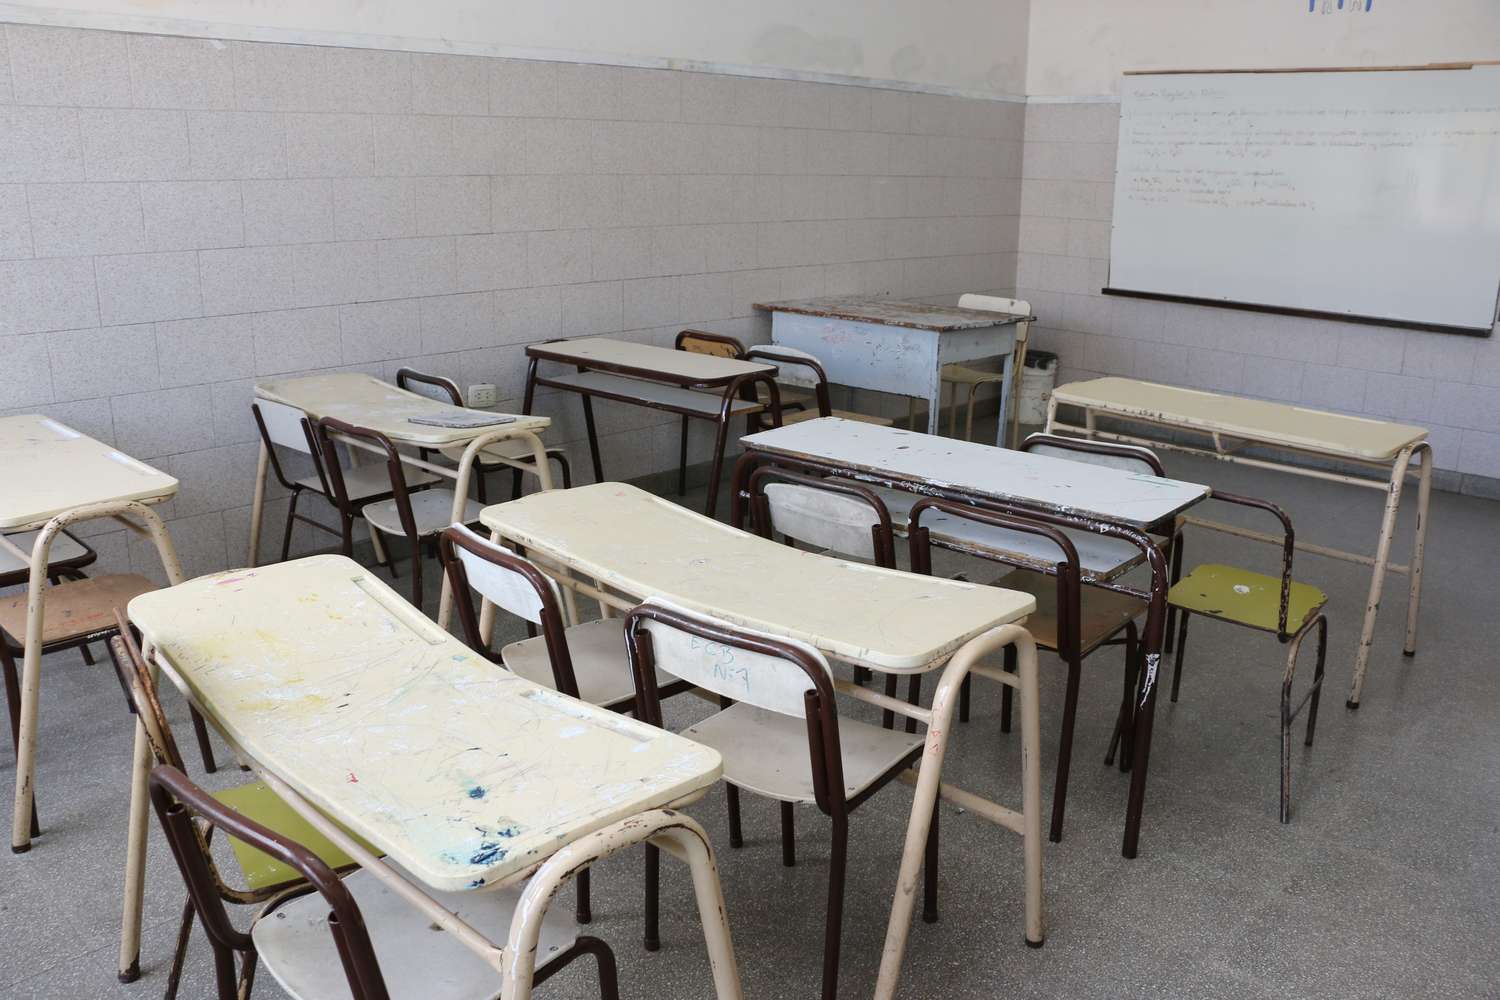 Lacunza dijo que más de la mitad de los docentes bonaerenses están dando clases